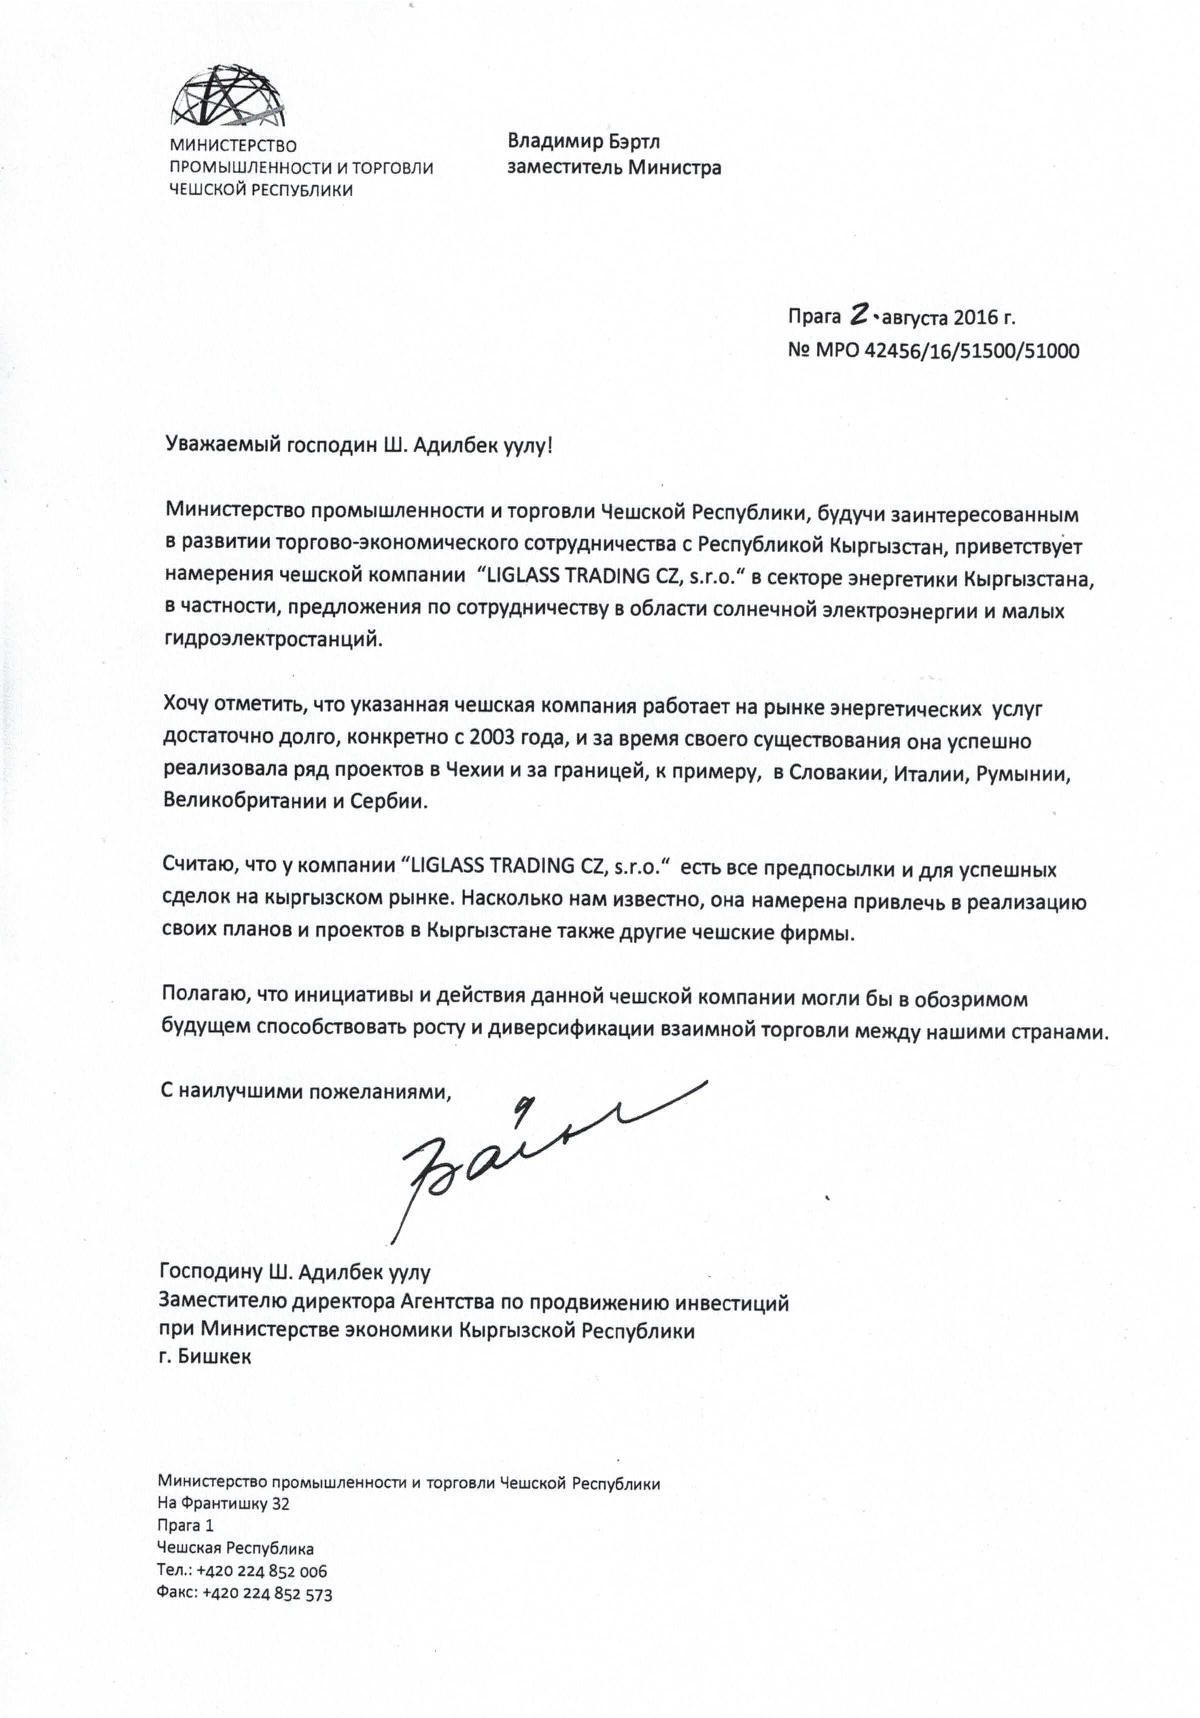 Originál dopisu, který zaslalo ministerstvo průmyslu do Kyrgyzstánu